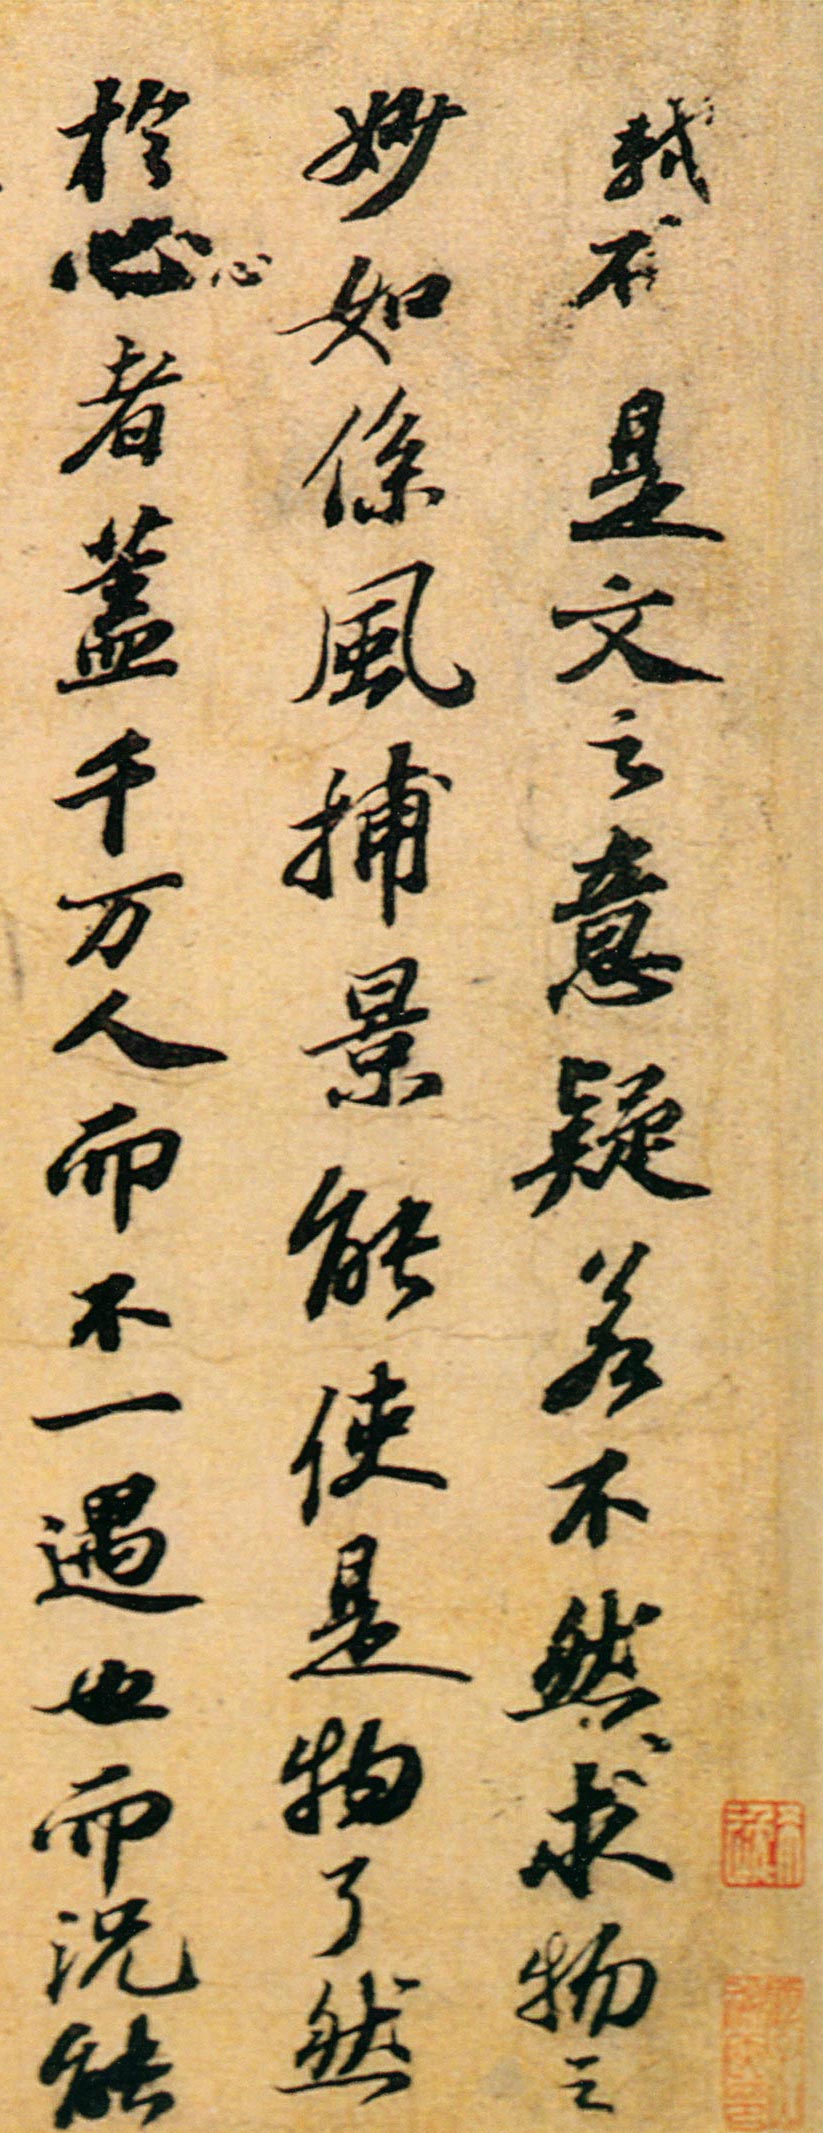 上海博物馆收藏的《与谢民师论文帖》  非此次展览展品